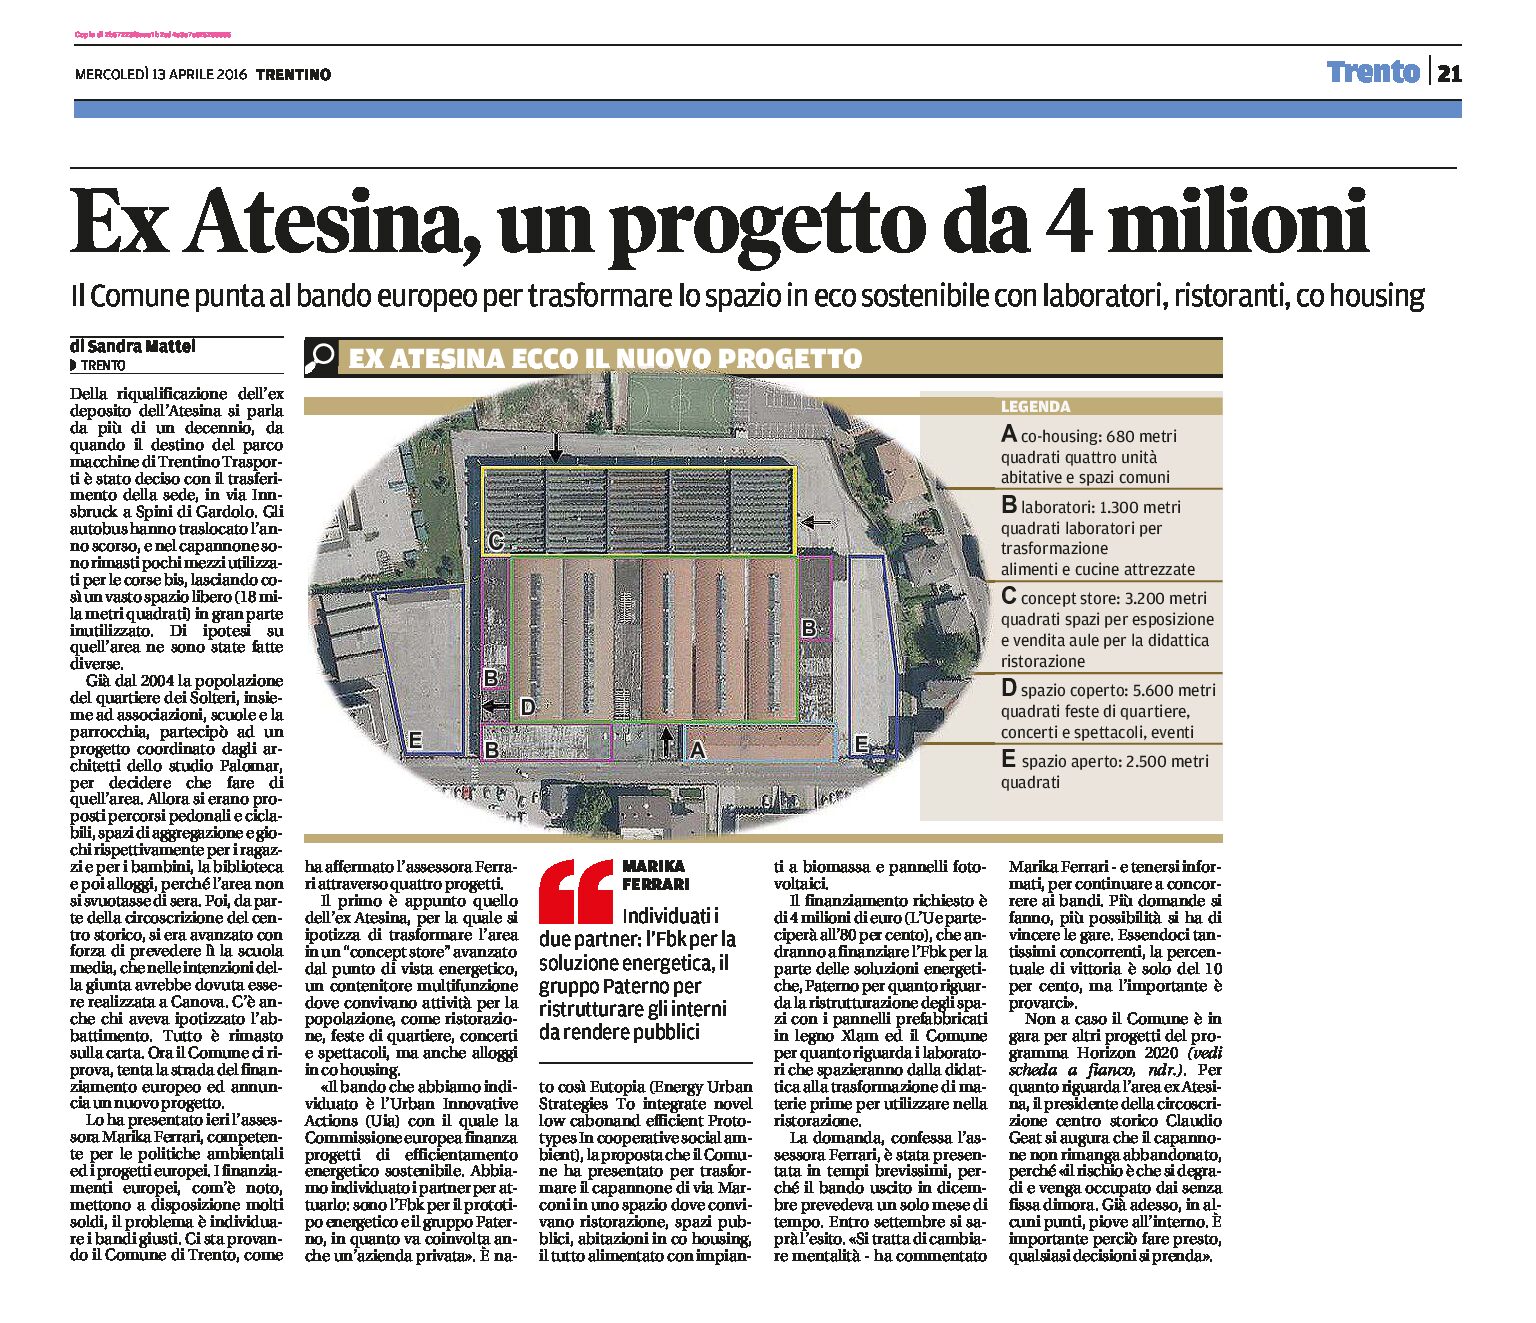 Trento, Solteri: ex Atesina, un progetto da 4 milioni. Individuati due partner: l’Fbk e il gruppo Paterno